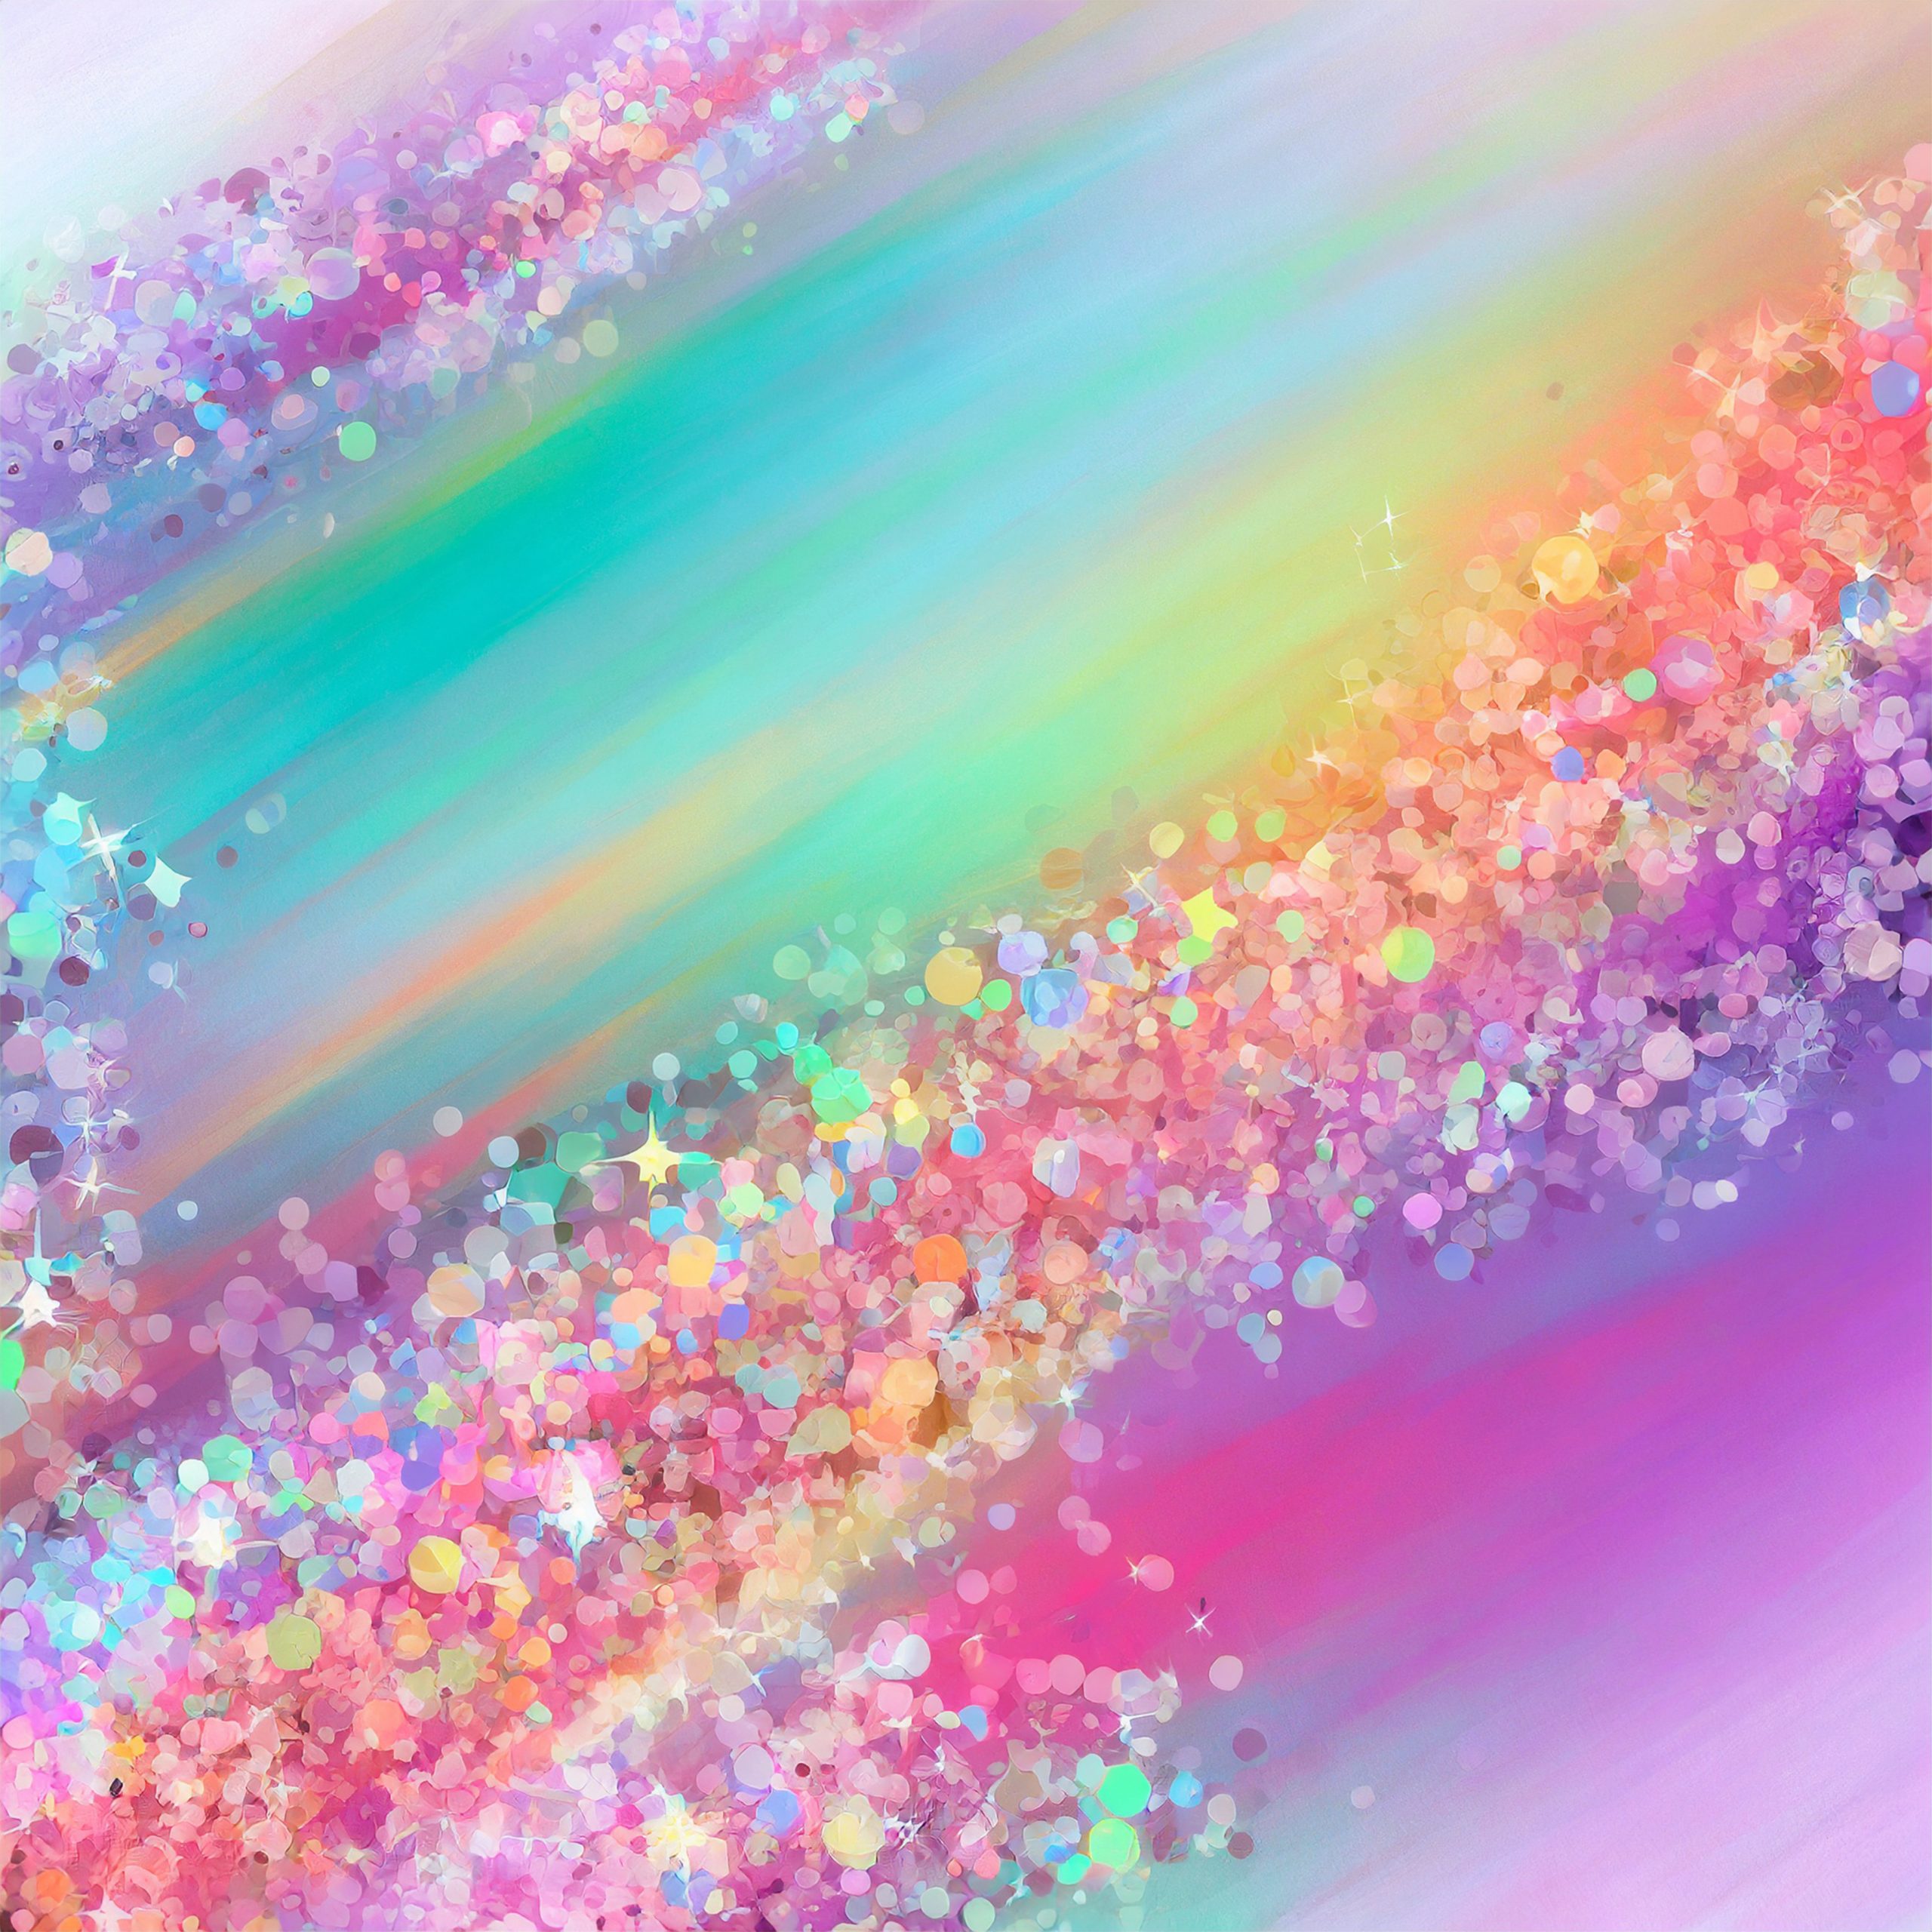 Fondo de pinutra de colores luminiscentes difuminados entre sí y confetti brillante